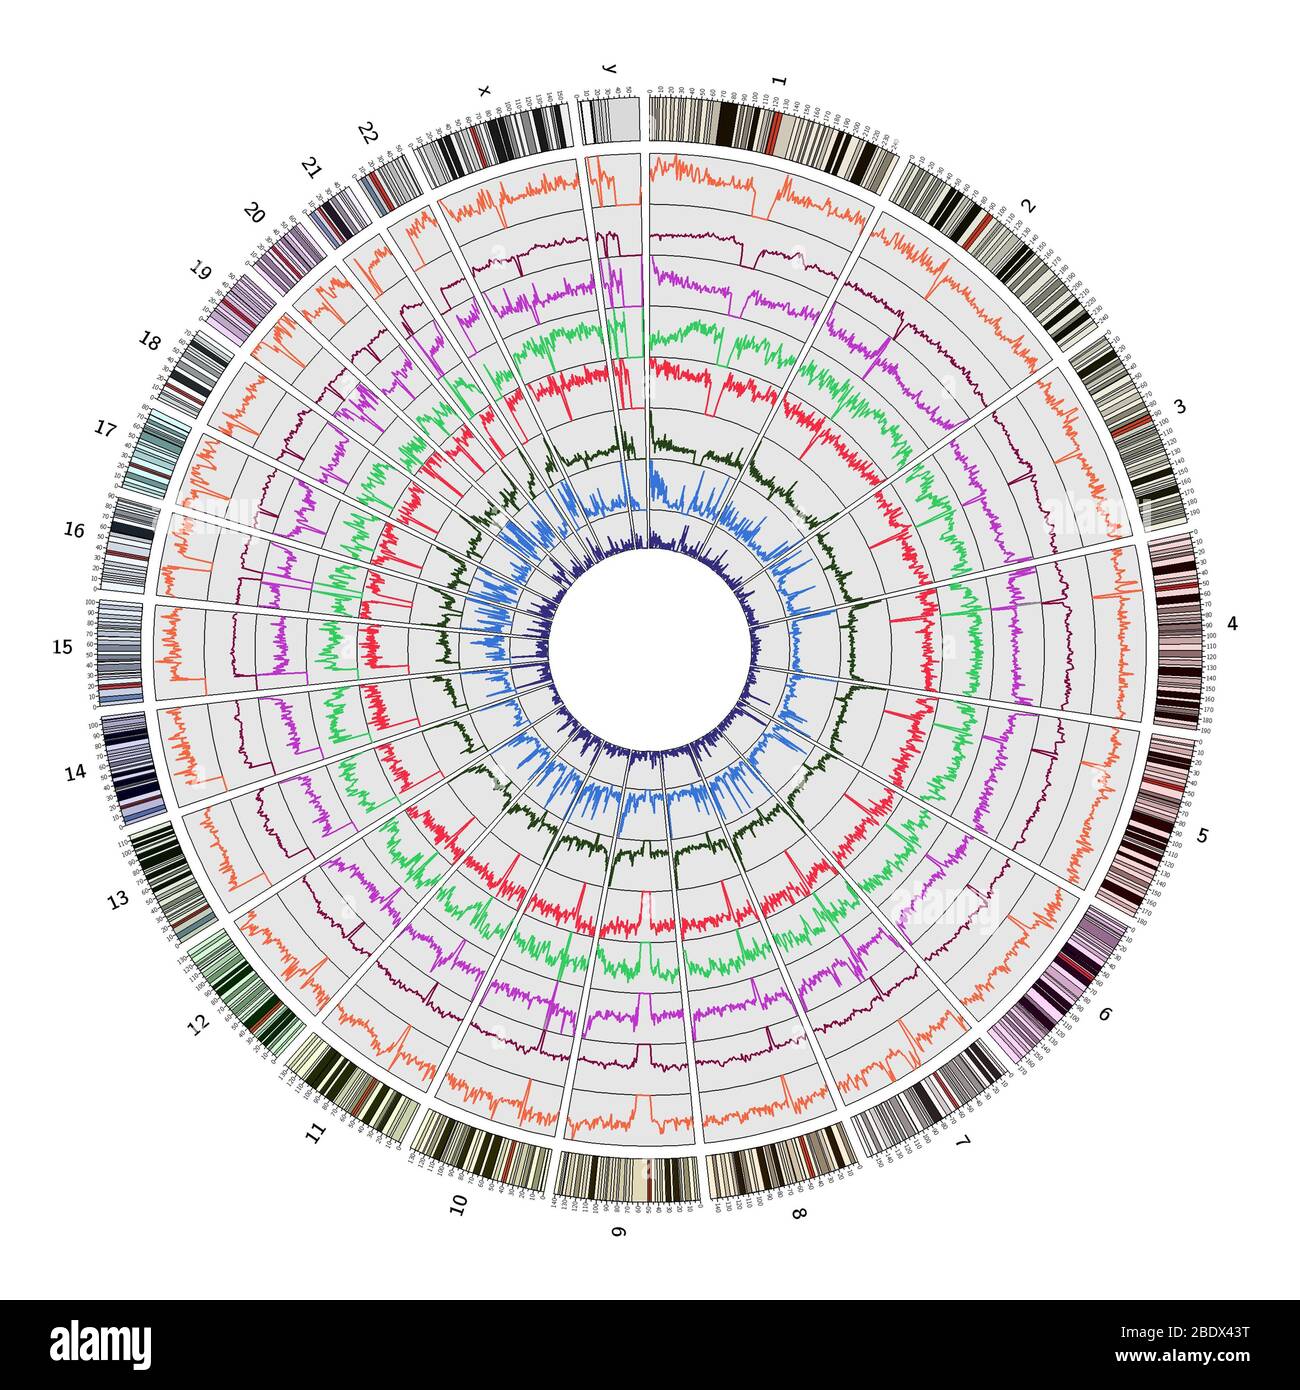 Circos, Mapa Circular del Genoma, humano Foto de stock